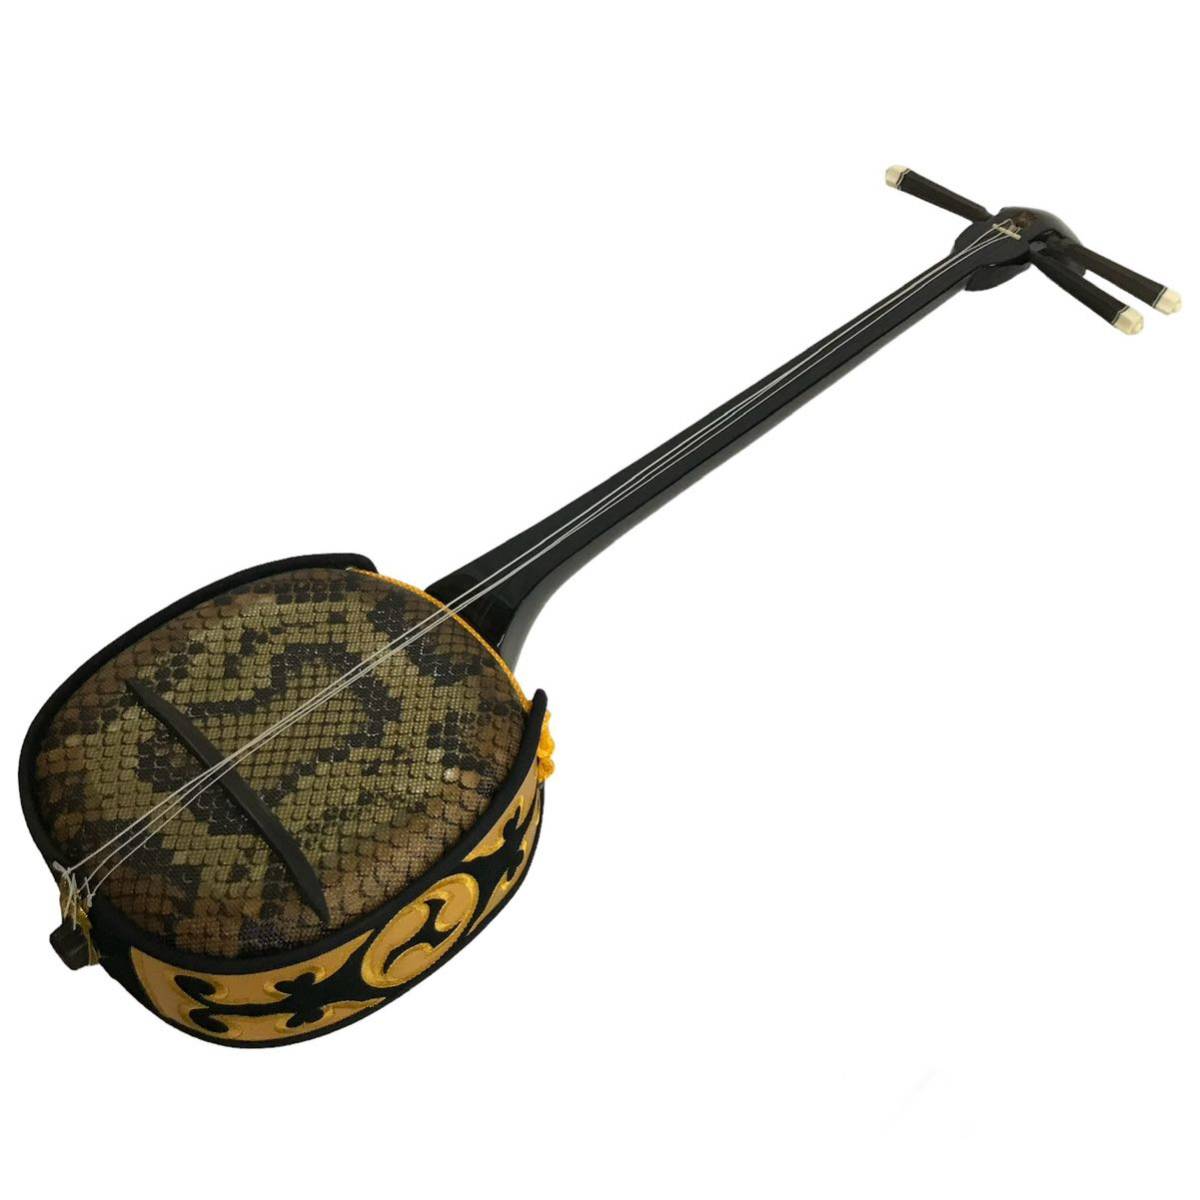 沖縄三味線 楽器 専用ケース付 琉球三味線 蛇皮 和楽器 弦楽器 人工皮 希少品 メーカー不明